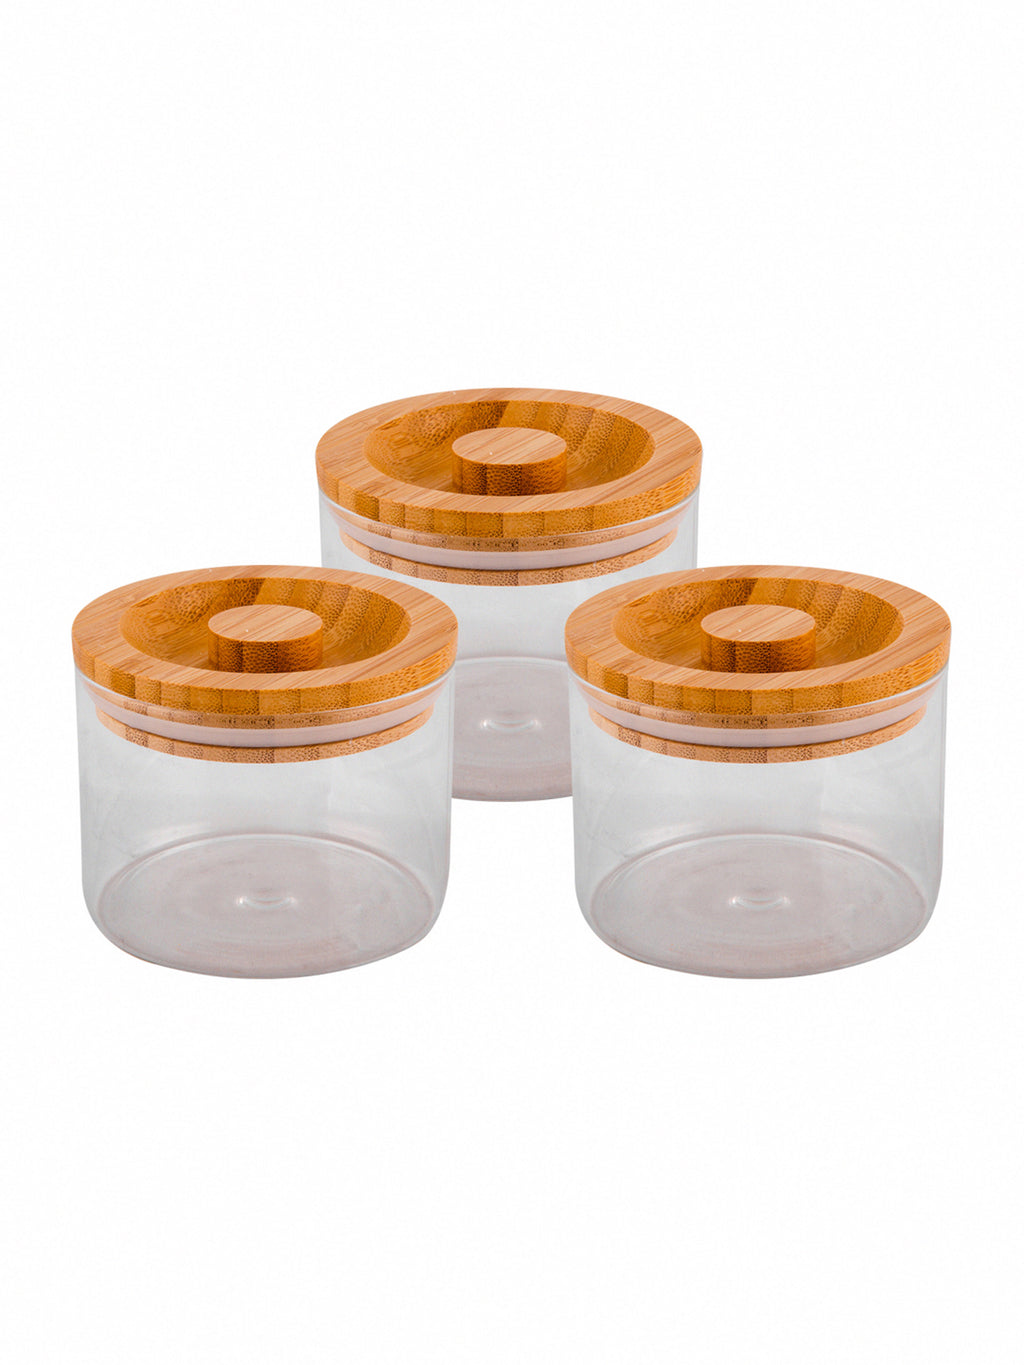 Goodhomes Basic Round Borosilicate Small Jar Set With Bamboo Wood Lid (Set Of 3 Pcs)